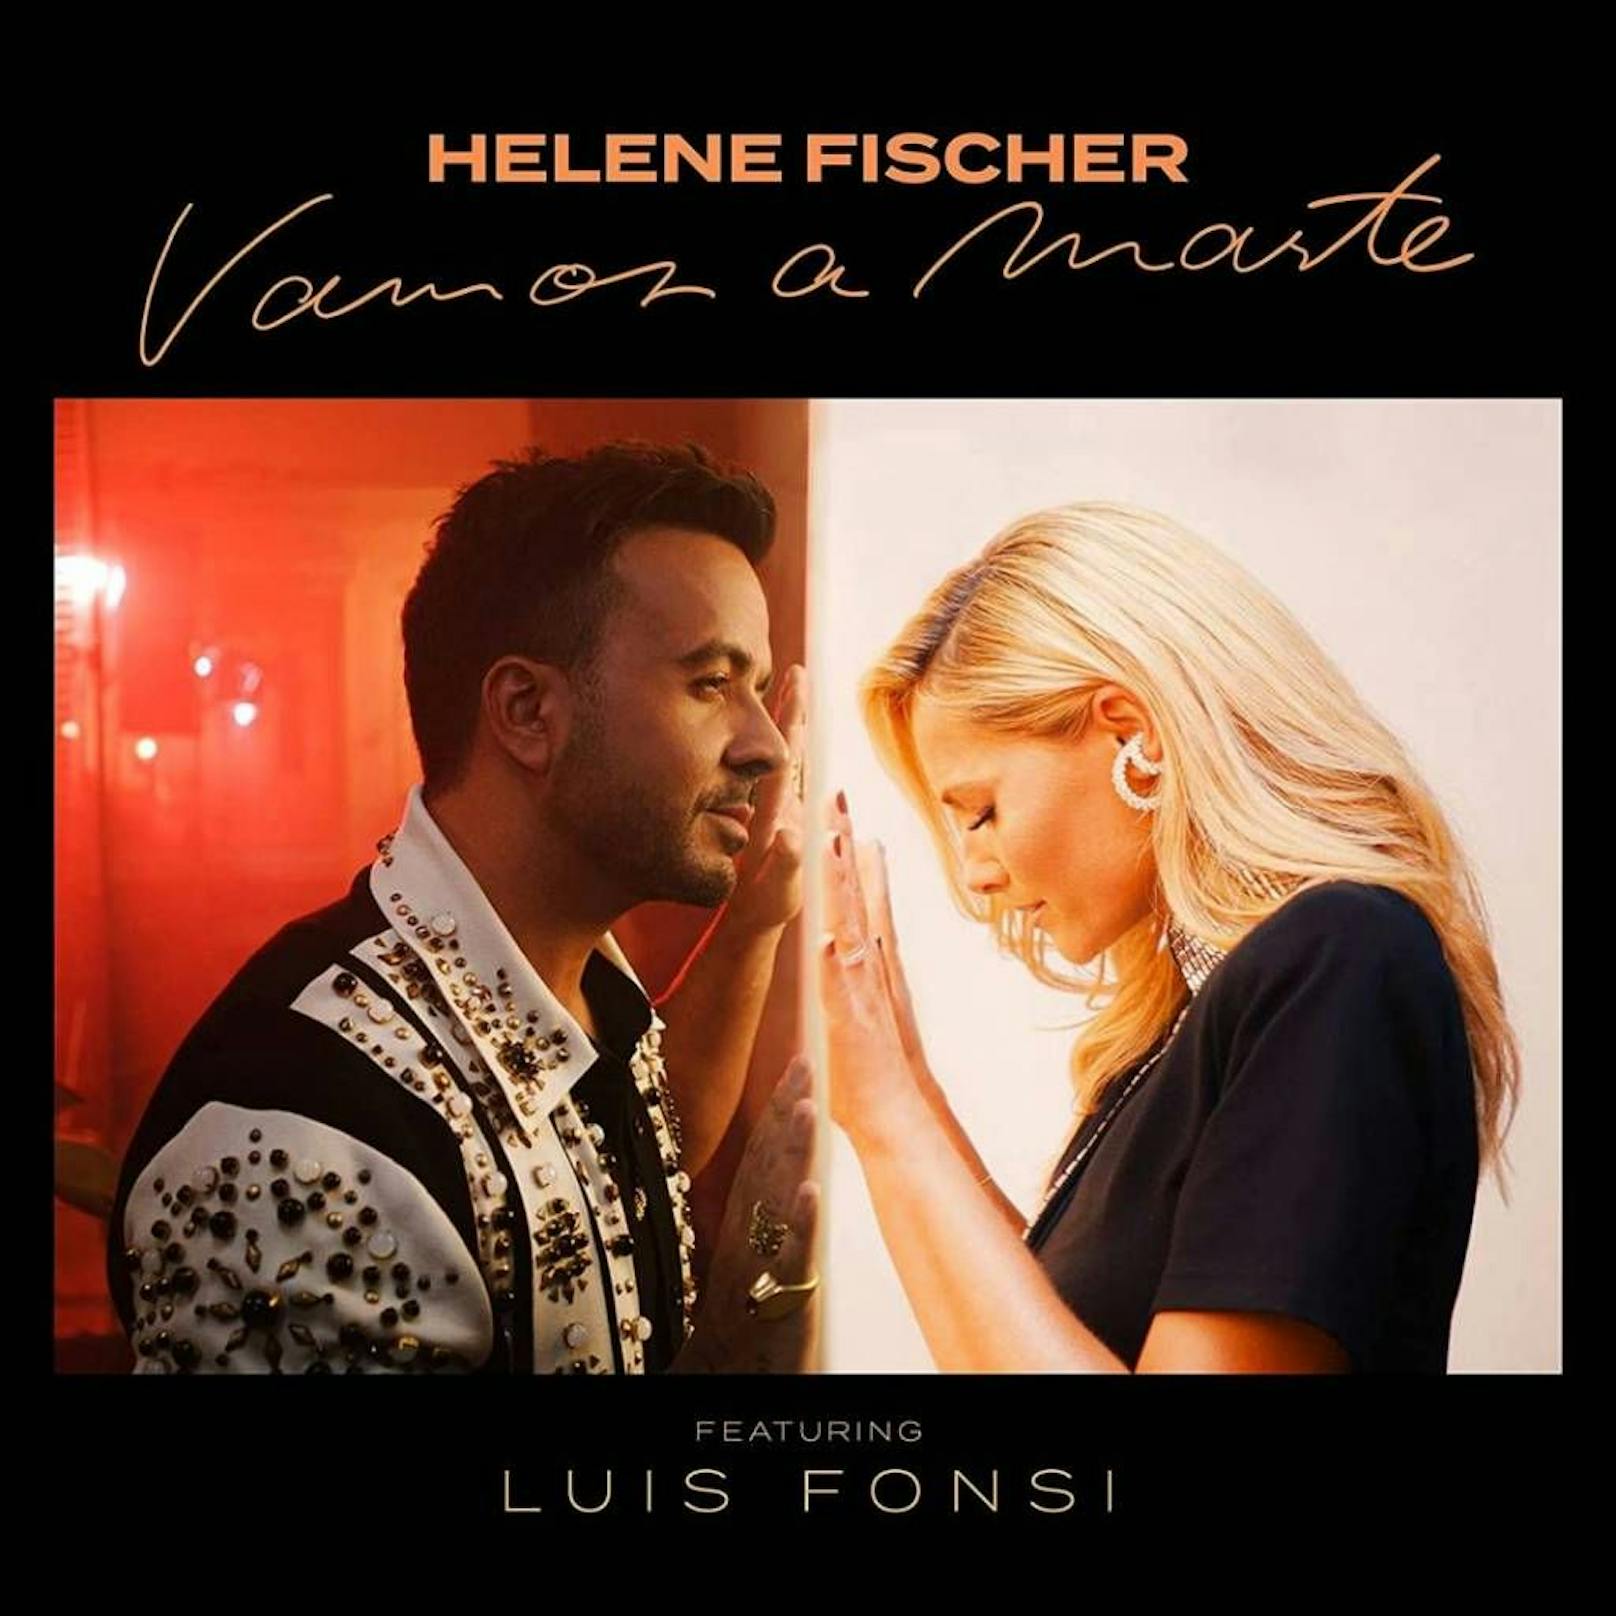 Offiziell erscheint <strong>Helene Fischer</strong>s Duett mit <strong>Luis Fonsi</strong> "Vamos A Marte" erst am kommenden Freitag - jetzt gibt es eine erste Hörprobe auf TikTok